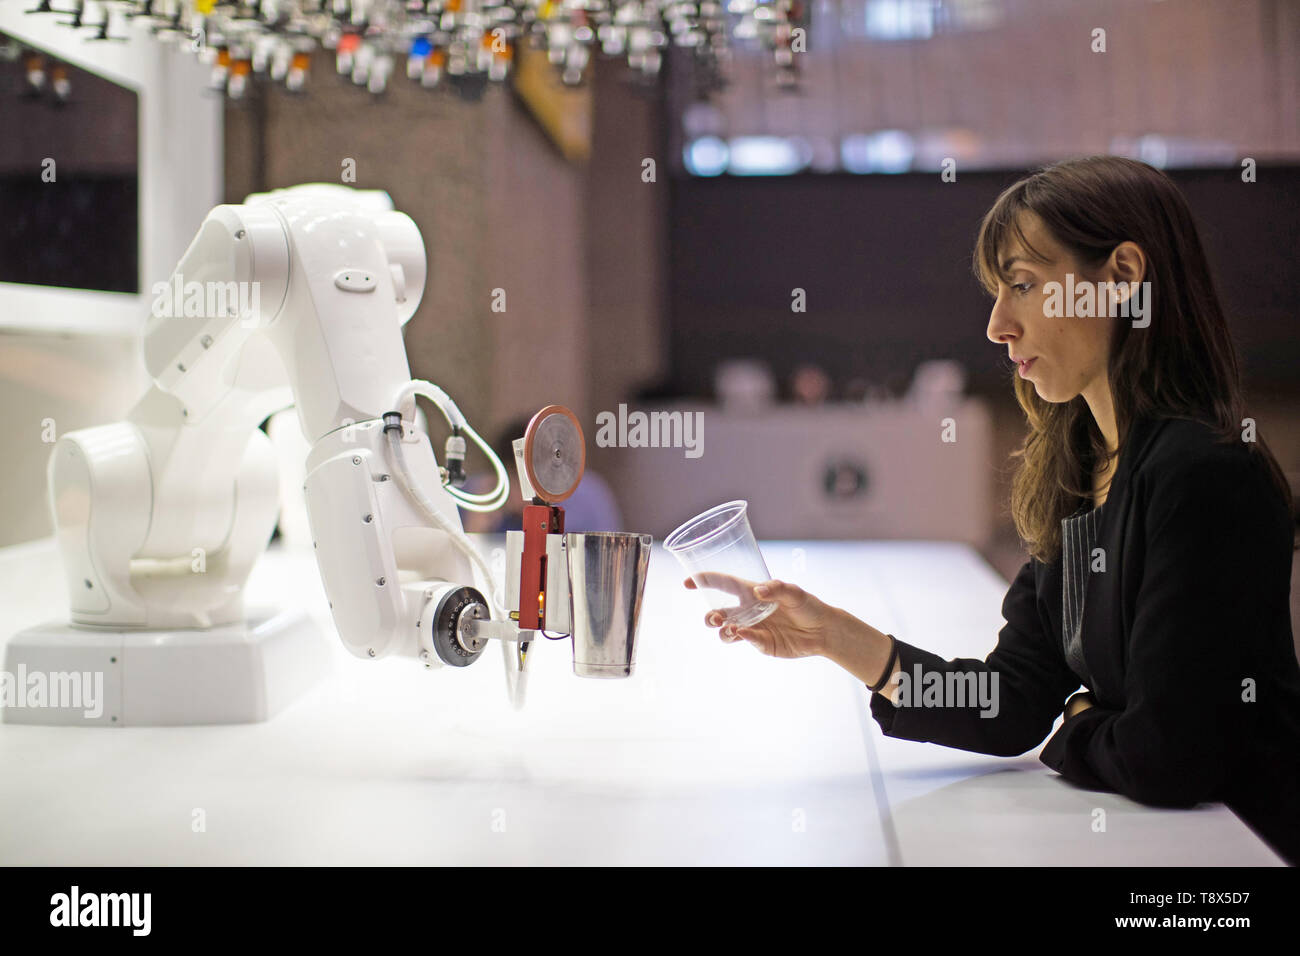 Una mujer interactúa con un camarero robótico llamado 'Makr Shakr' en una rueda de prensa previa para el 'AI: más que humano" exposición en el Barbican Centre de Londres. Los principales nueva exposición explora la relación entre el hombre y la inteligencia artificial. Foto de stock